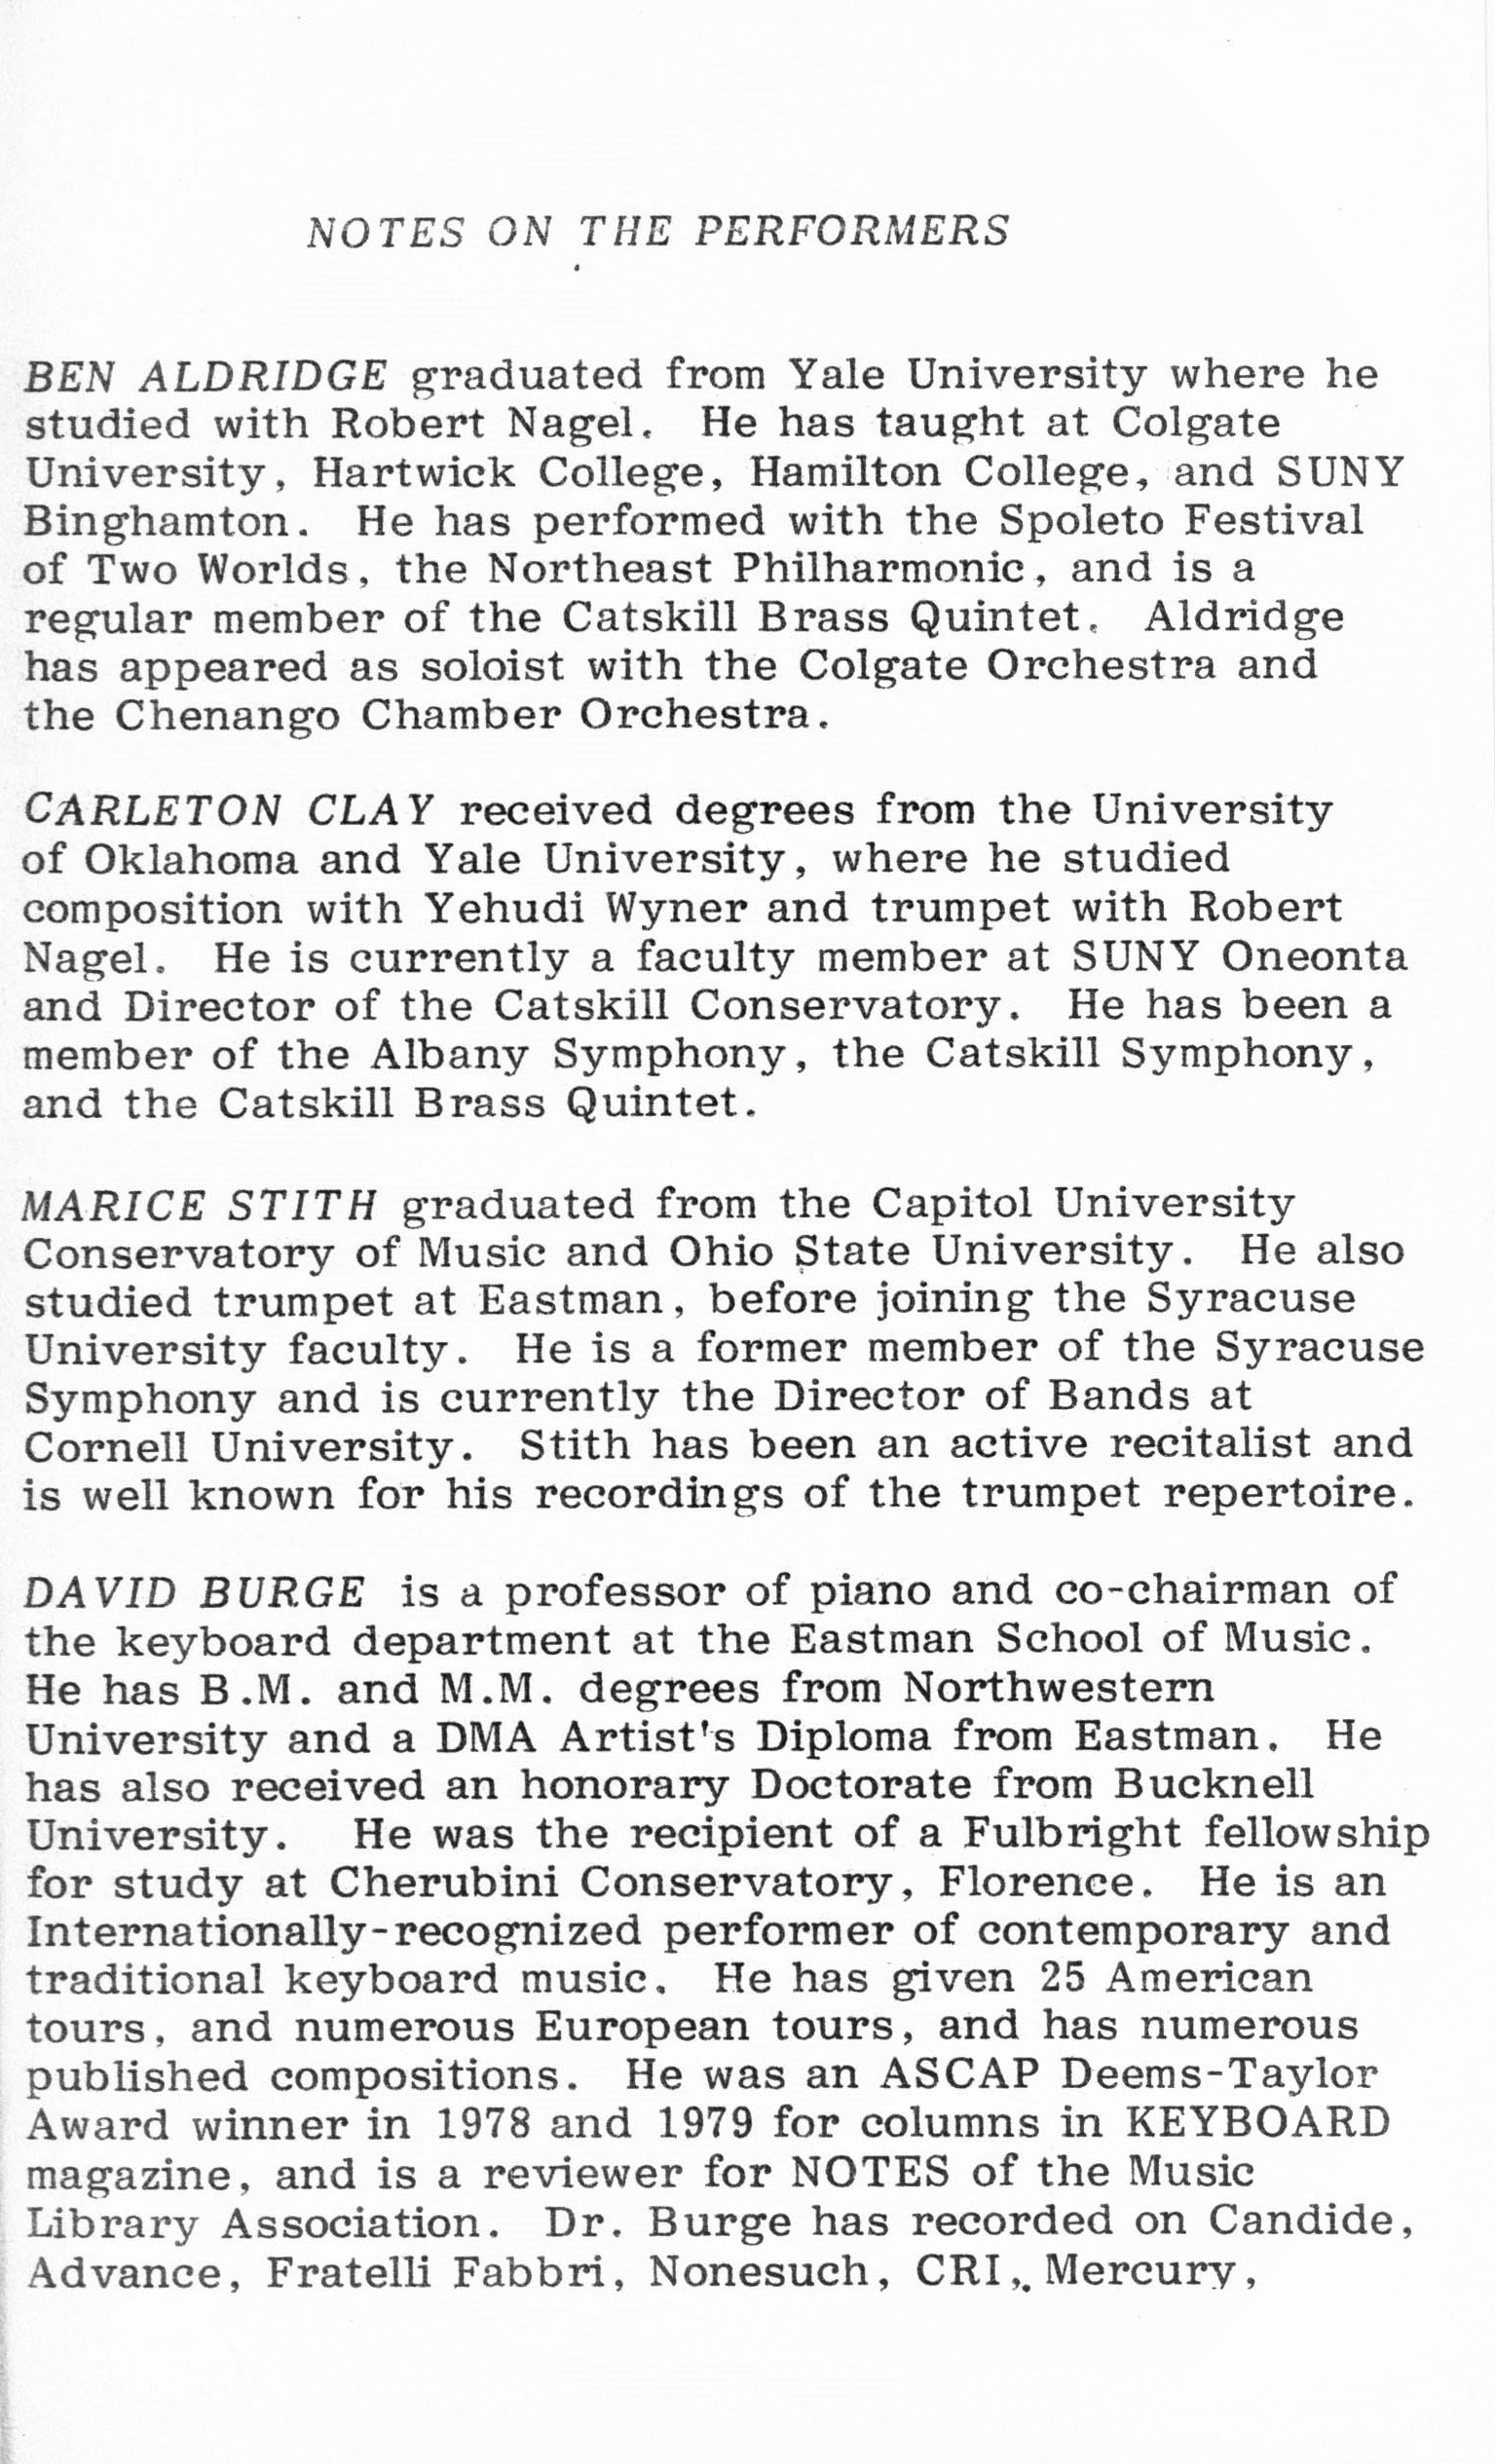 1983 ICMC Concert III program, page 11